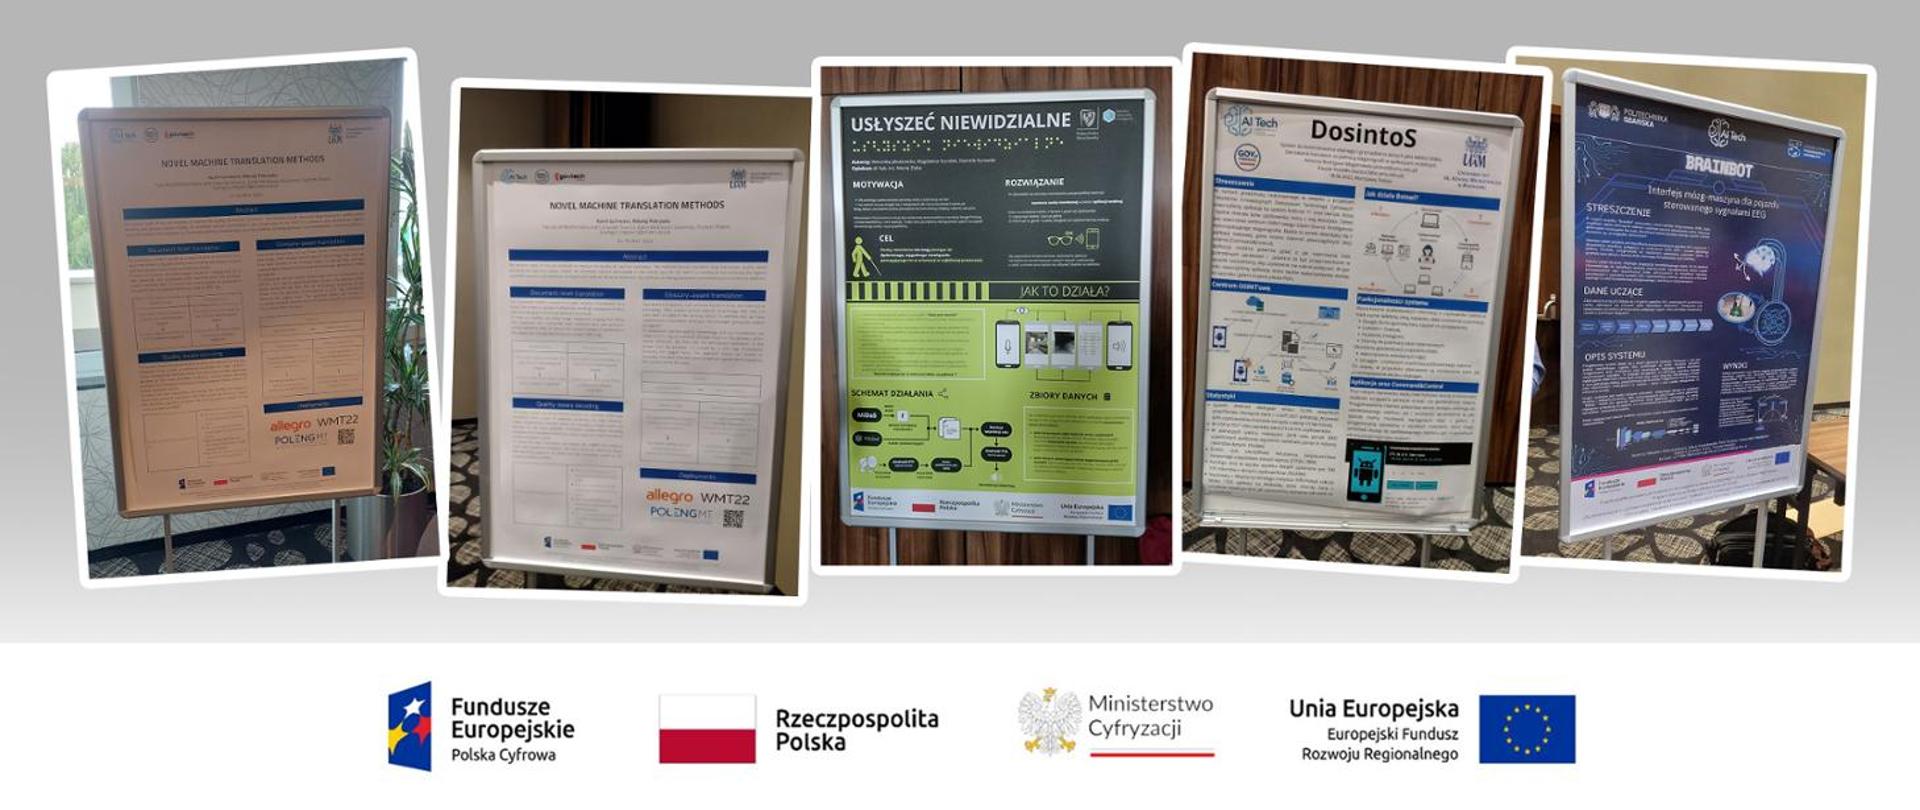 5 plakatów prezentujących nagrodzone projekty. Logotypy projektowe znak FE, barwy RP, znak MC, znak UE.